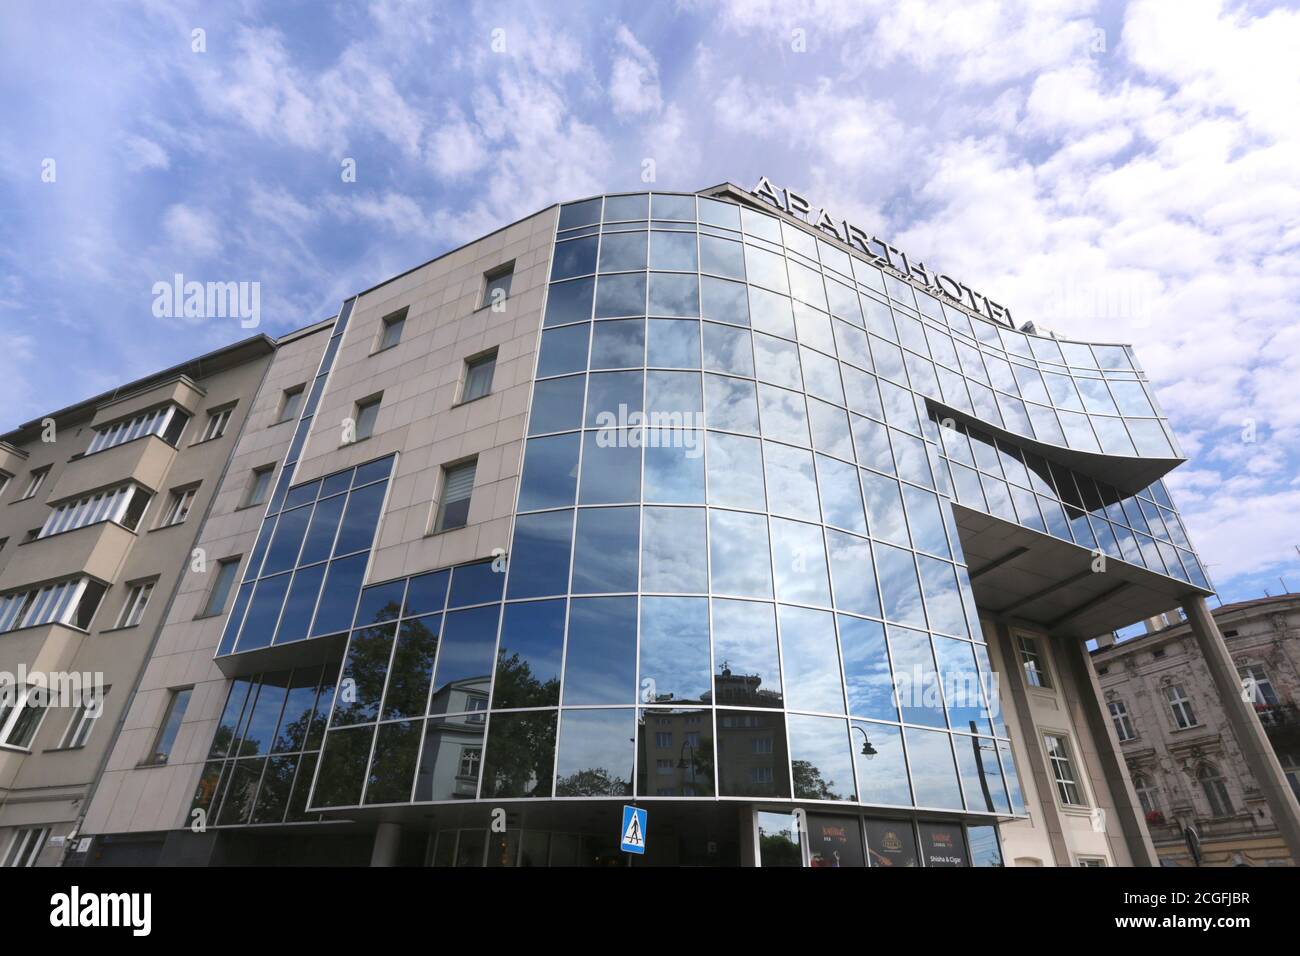 Cracovie. Cracovie. Pologne. Ciel nuageux se reflétant dans la façade couverte de verre de l'Aparthotel sur la place Kossak Banque D'Images